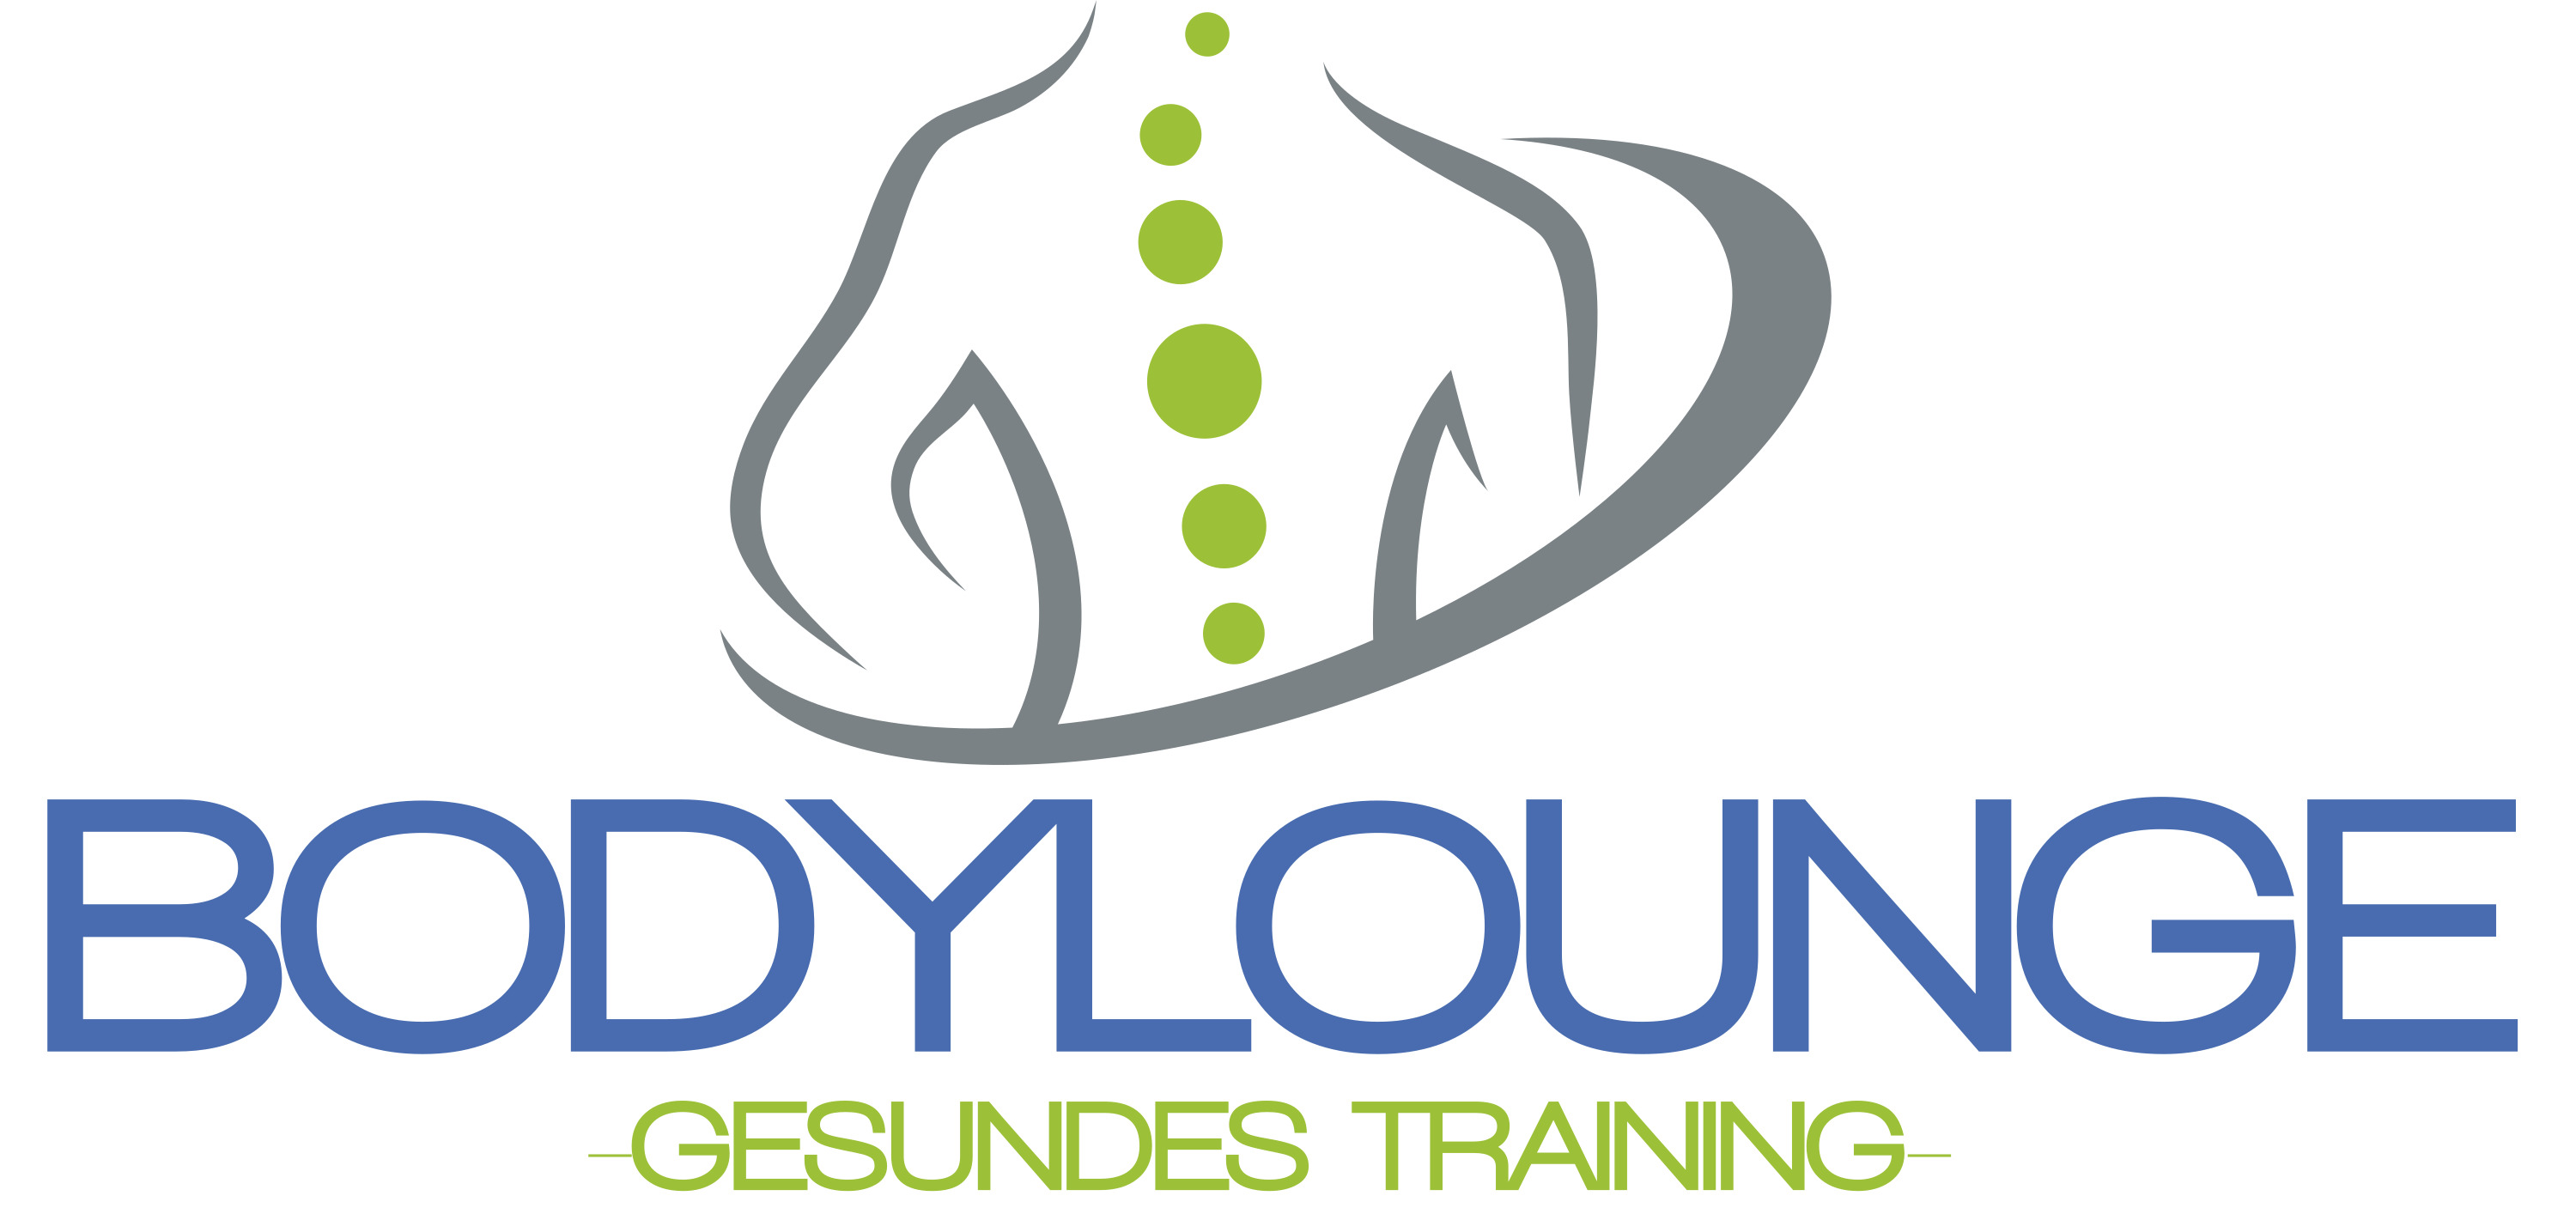 BODYLOUNGE- Gesundes Training Logo